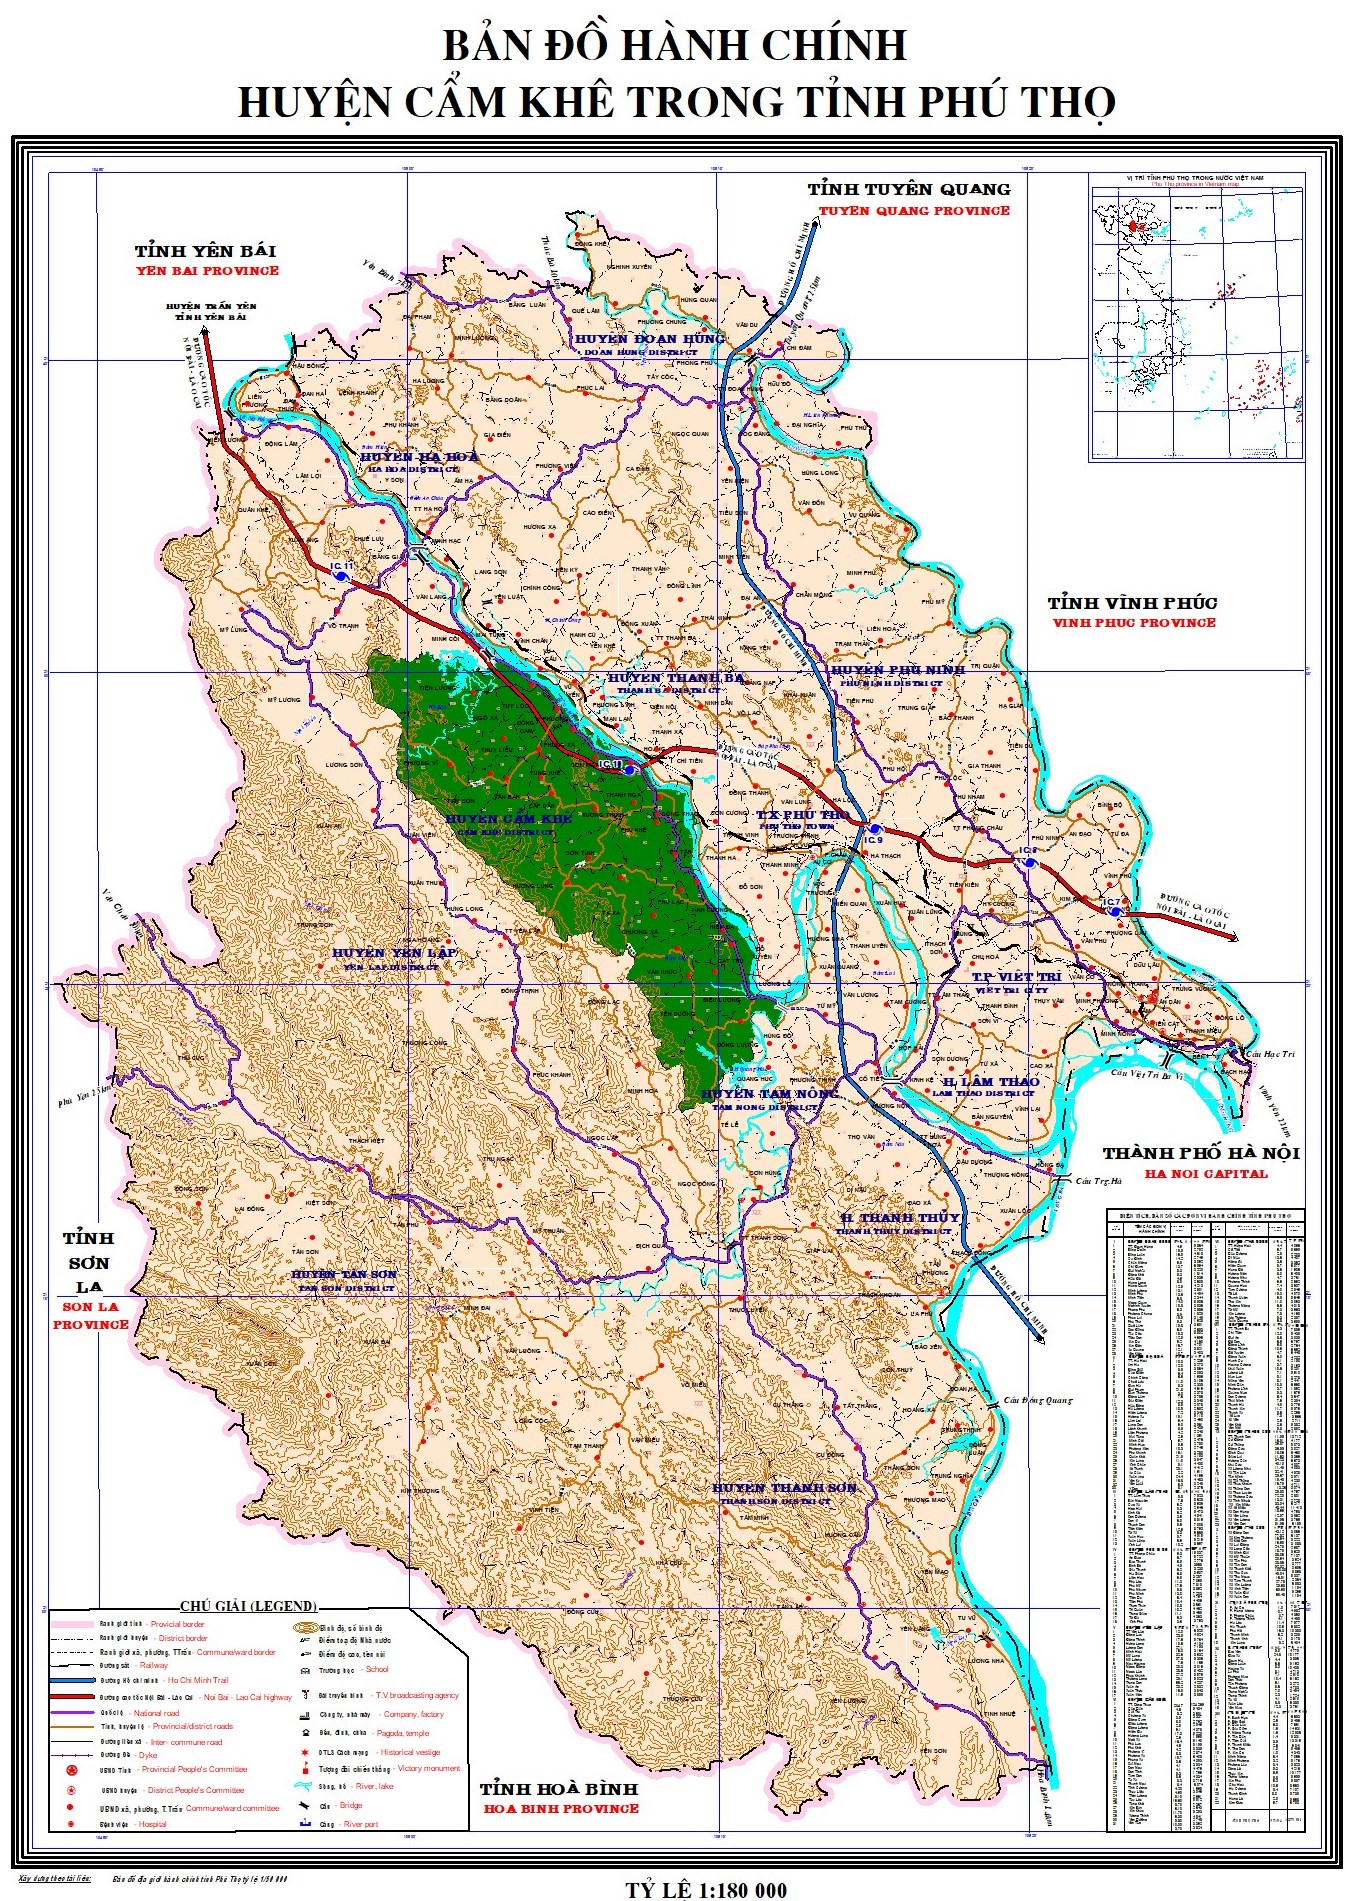 Bản đồ hành chính huyện Cẩm Khê, tỉnh Phú Thọ mang đến cho bạn cái nhìn tổng quan về địa lý và vị trí của huyện. Bạn sẽ cập nhật được thông tin mới nhất về các địa điểm nổi tiếng và tiện ích hậu cần của khu vực này.